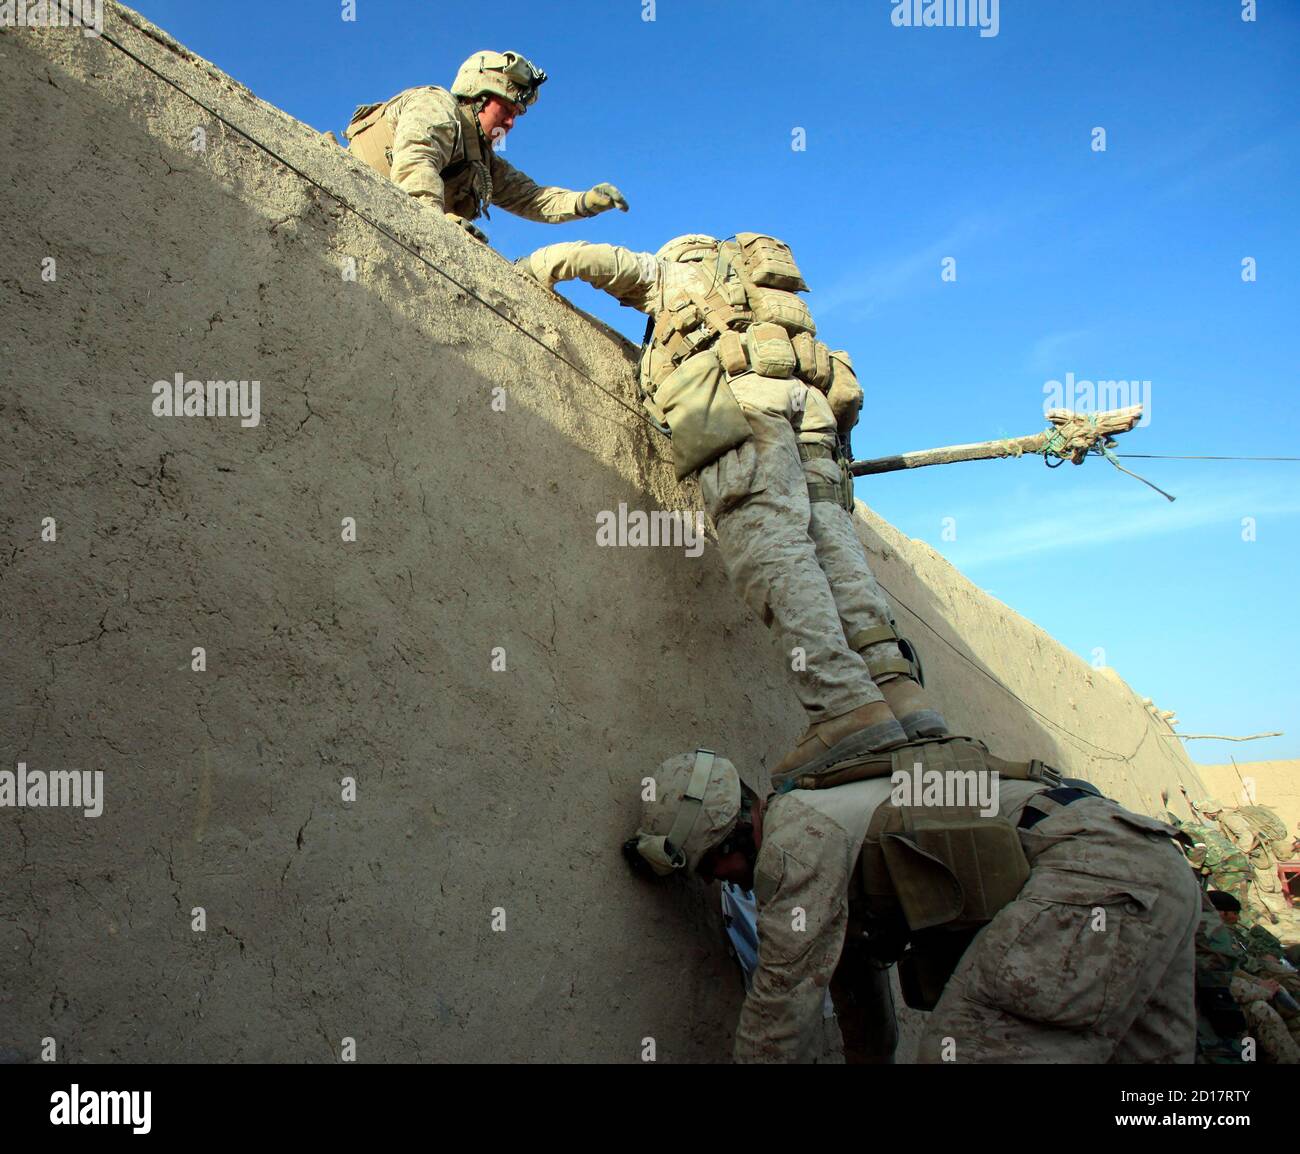 Les Marines des États-Unis de la Compagnie Bravo du 1er Bataillon, 6e les Marines grimpent un mur pendant une opération dans la ville de Marjah, dans le district nad Ali de la province de Helmand le 16 février 2010. Les Marines des États-Unis, à la tête de l'une des plus grandes offensives de l'OTAN contre les militants islamistes talibans en Afghanistan, font face à une résistance féroce dans certaines régions, enlisées par de gros coups de feu, des tireurs d'élite et des pièges. REUTERS/Goran Tomasevic (AFGHANISTAN - Tags: CONFLIT POLITIQUE MILITAIRE) Banque D'Images